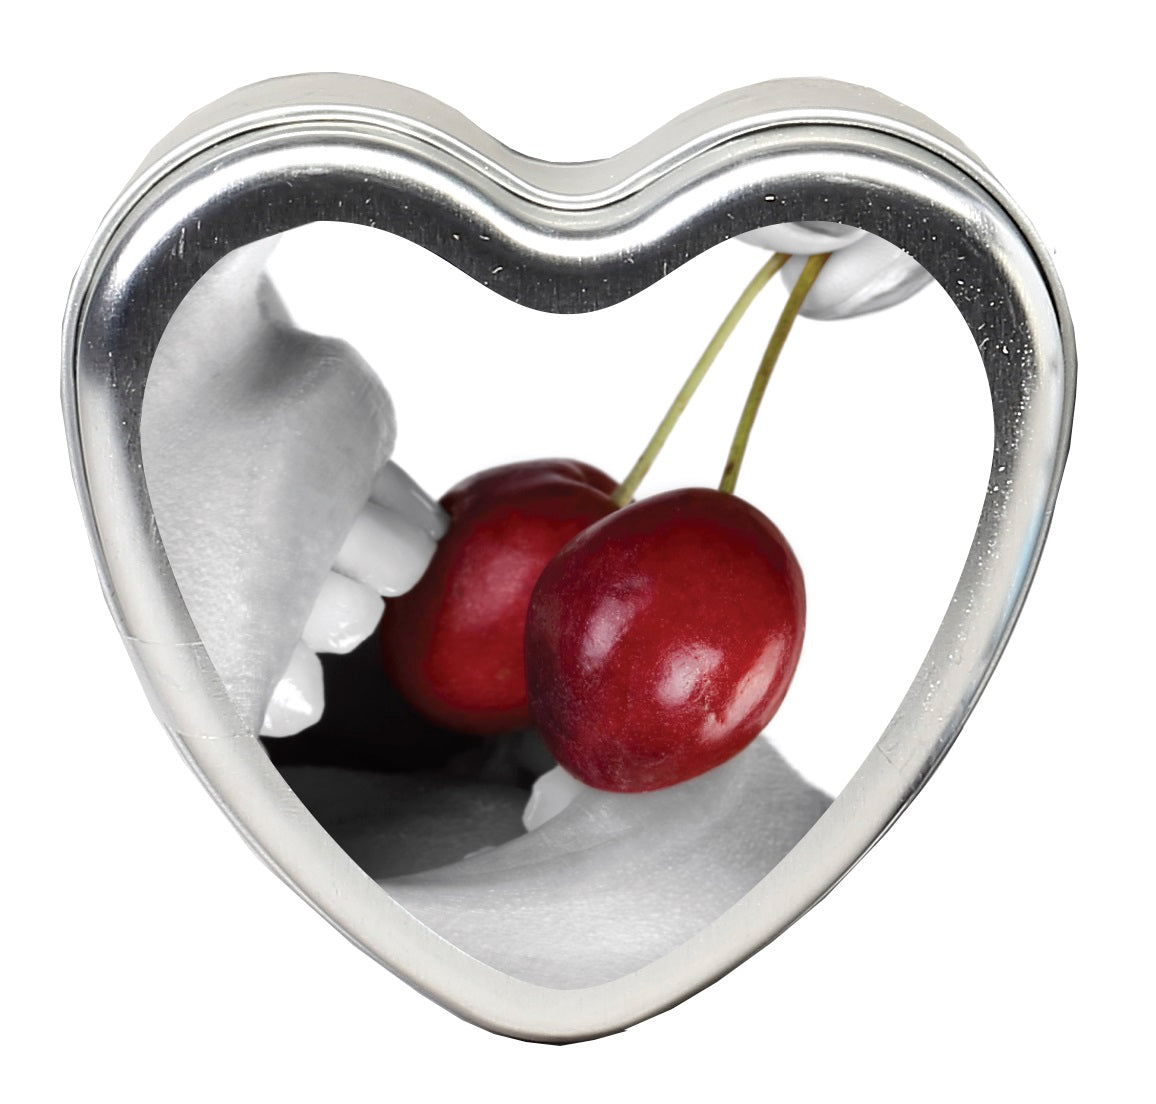 Edible Heart Candle - - 4 Oz. Cherry